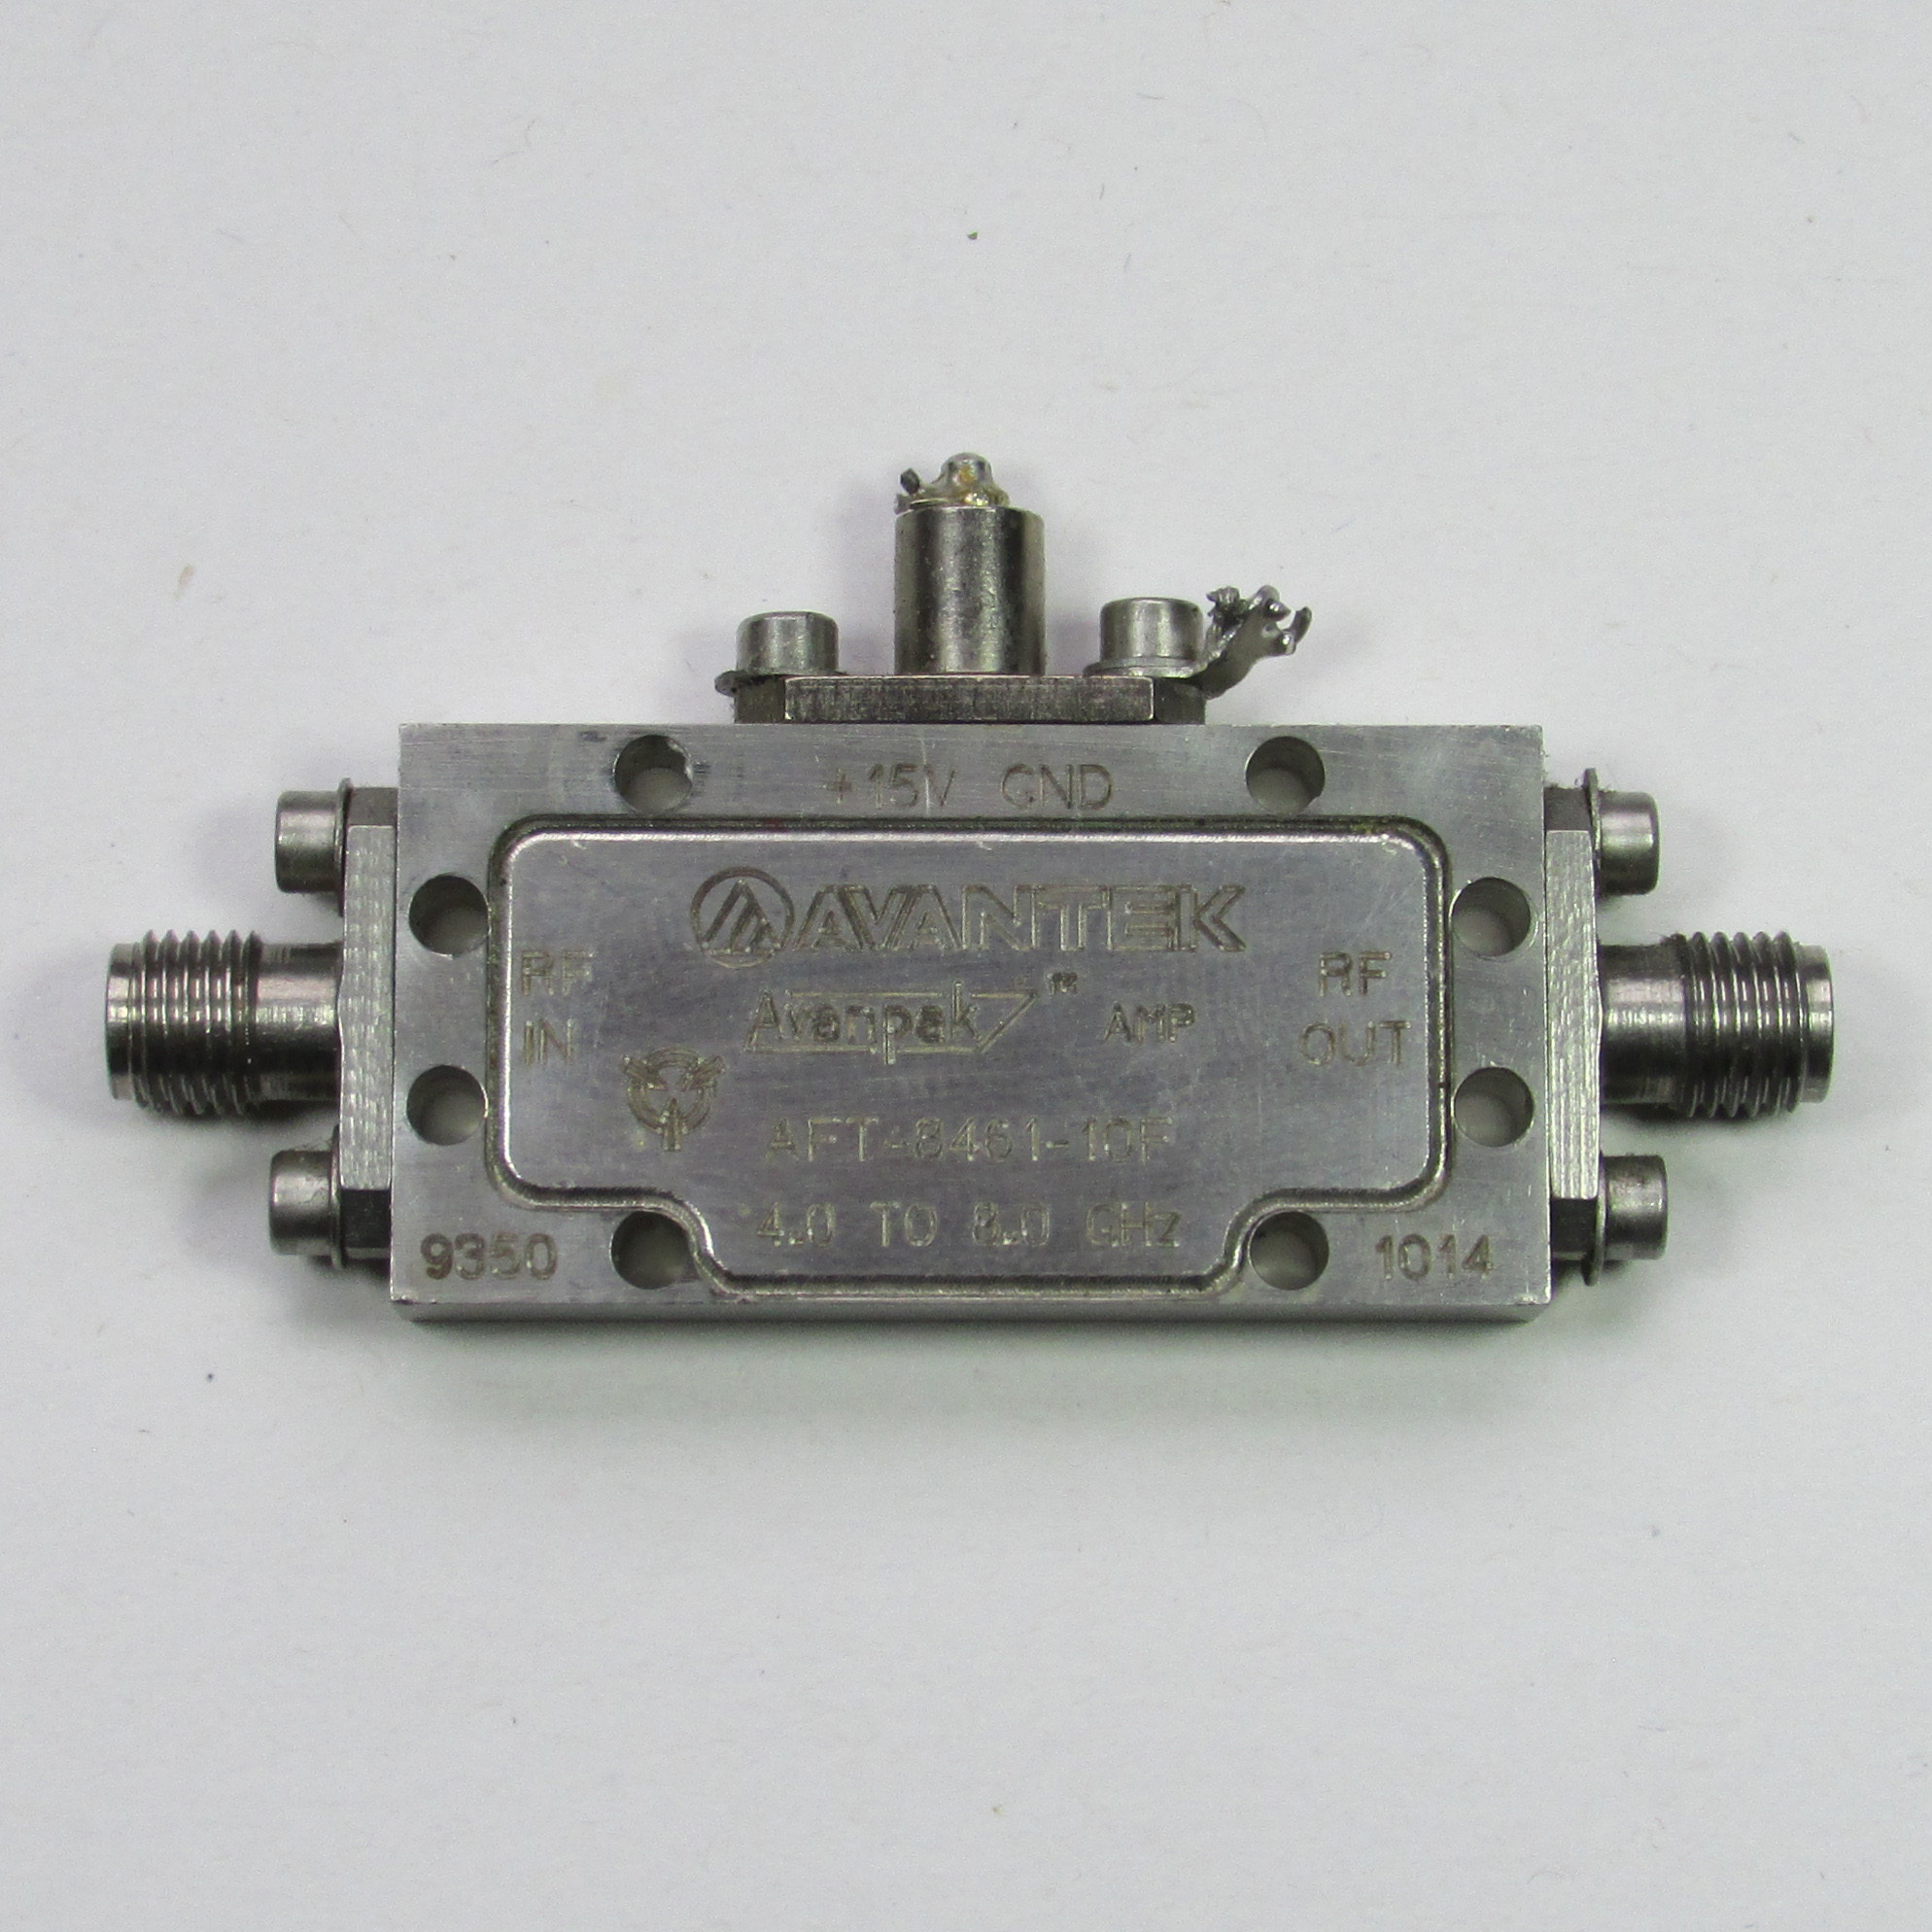 AVANTEK AFT-8461-10F 4-8GHz 6.5dB 20dBm SMA low noise amplifier